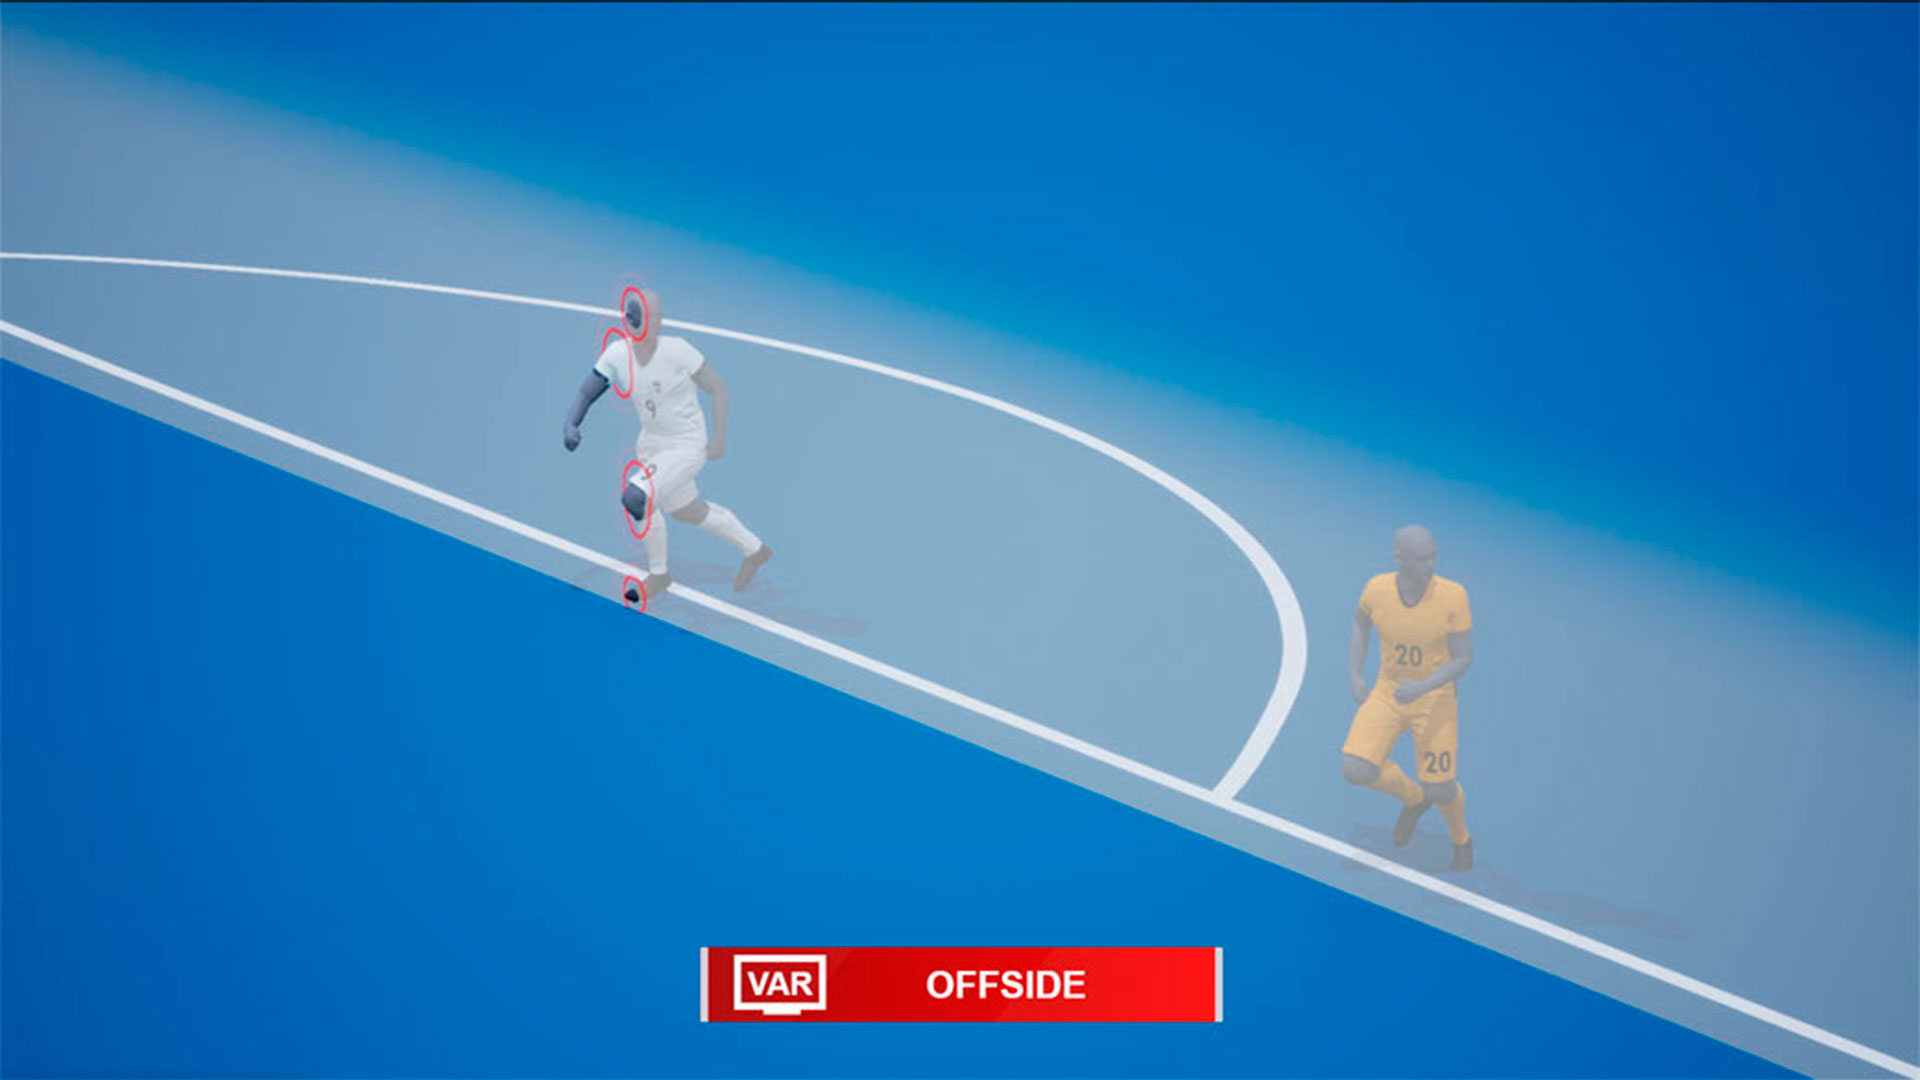 FIFA anunció que utilizará tecnología semiautomatizada para la detección del fuera de juego